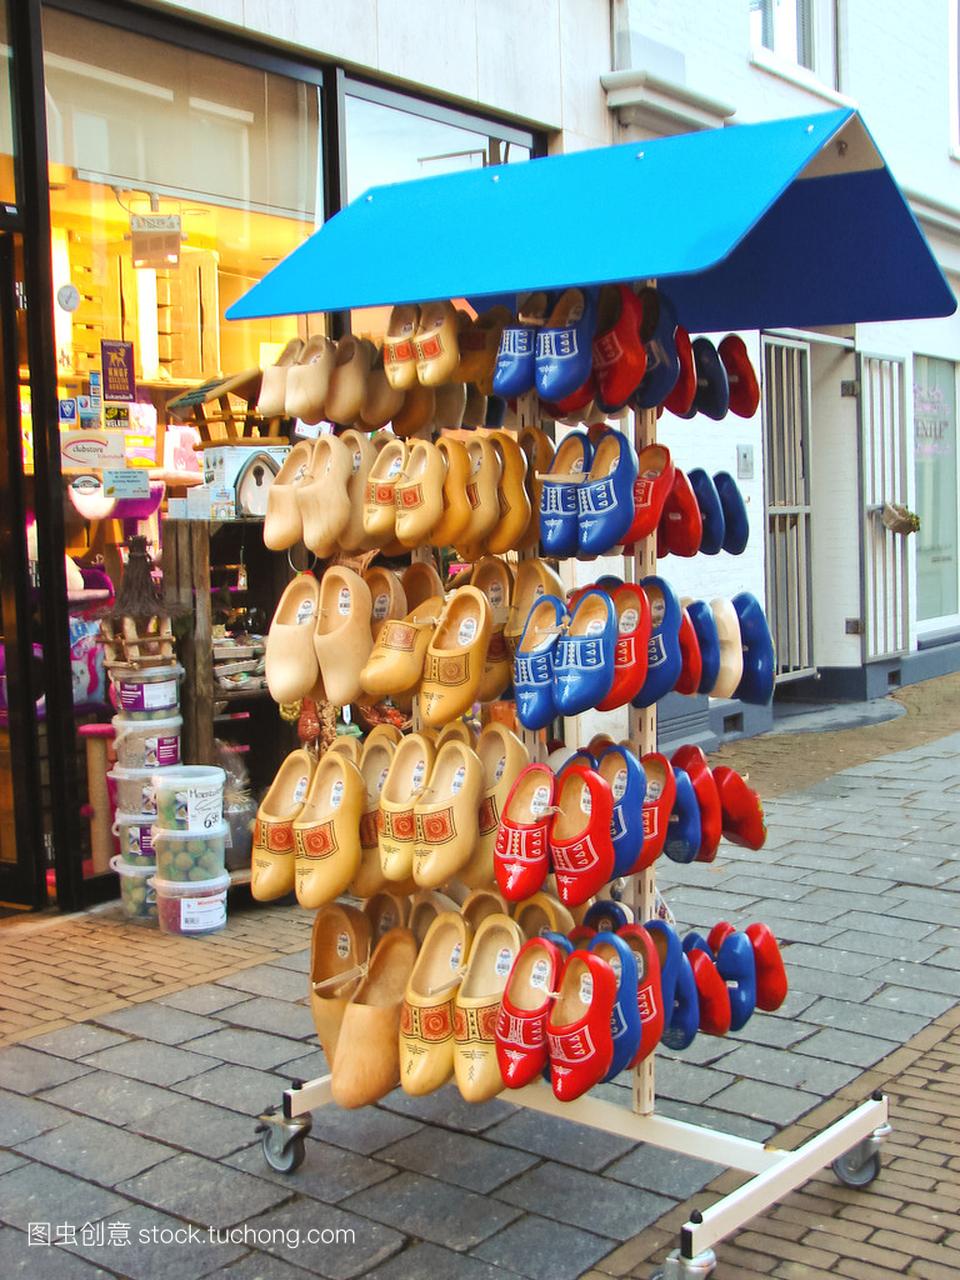 在 gorinchem 的荷兰城市销售国家鞋